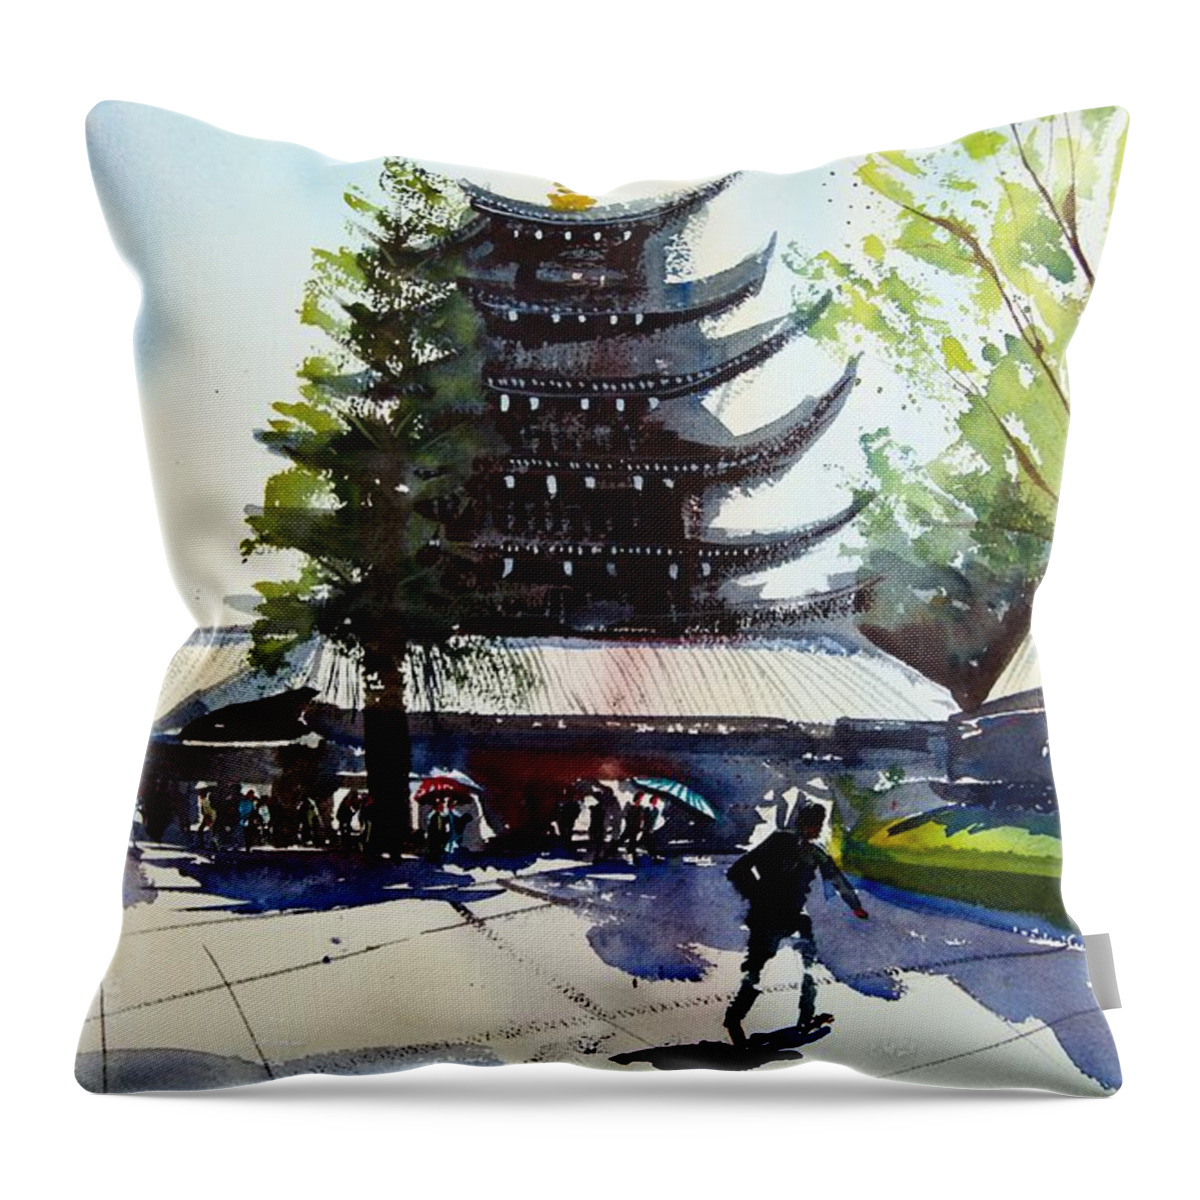 Japan Throw Pillow featuring the painting Asakusa Sensoji Temple by James Nyika